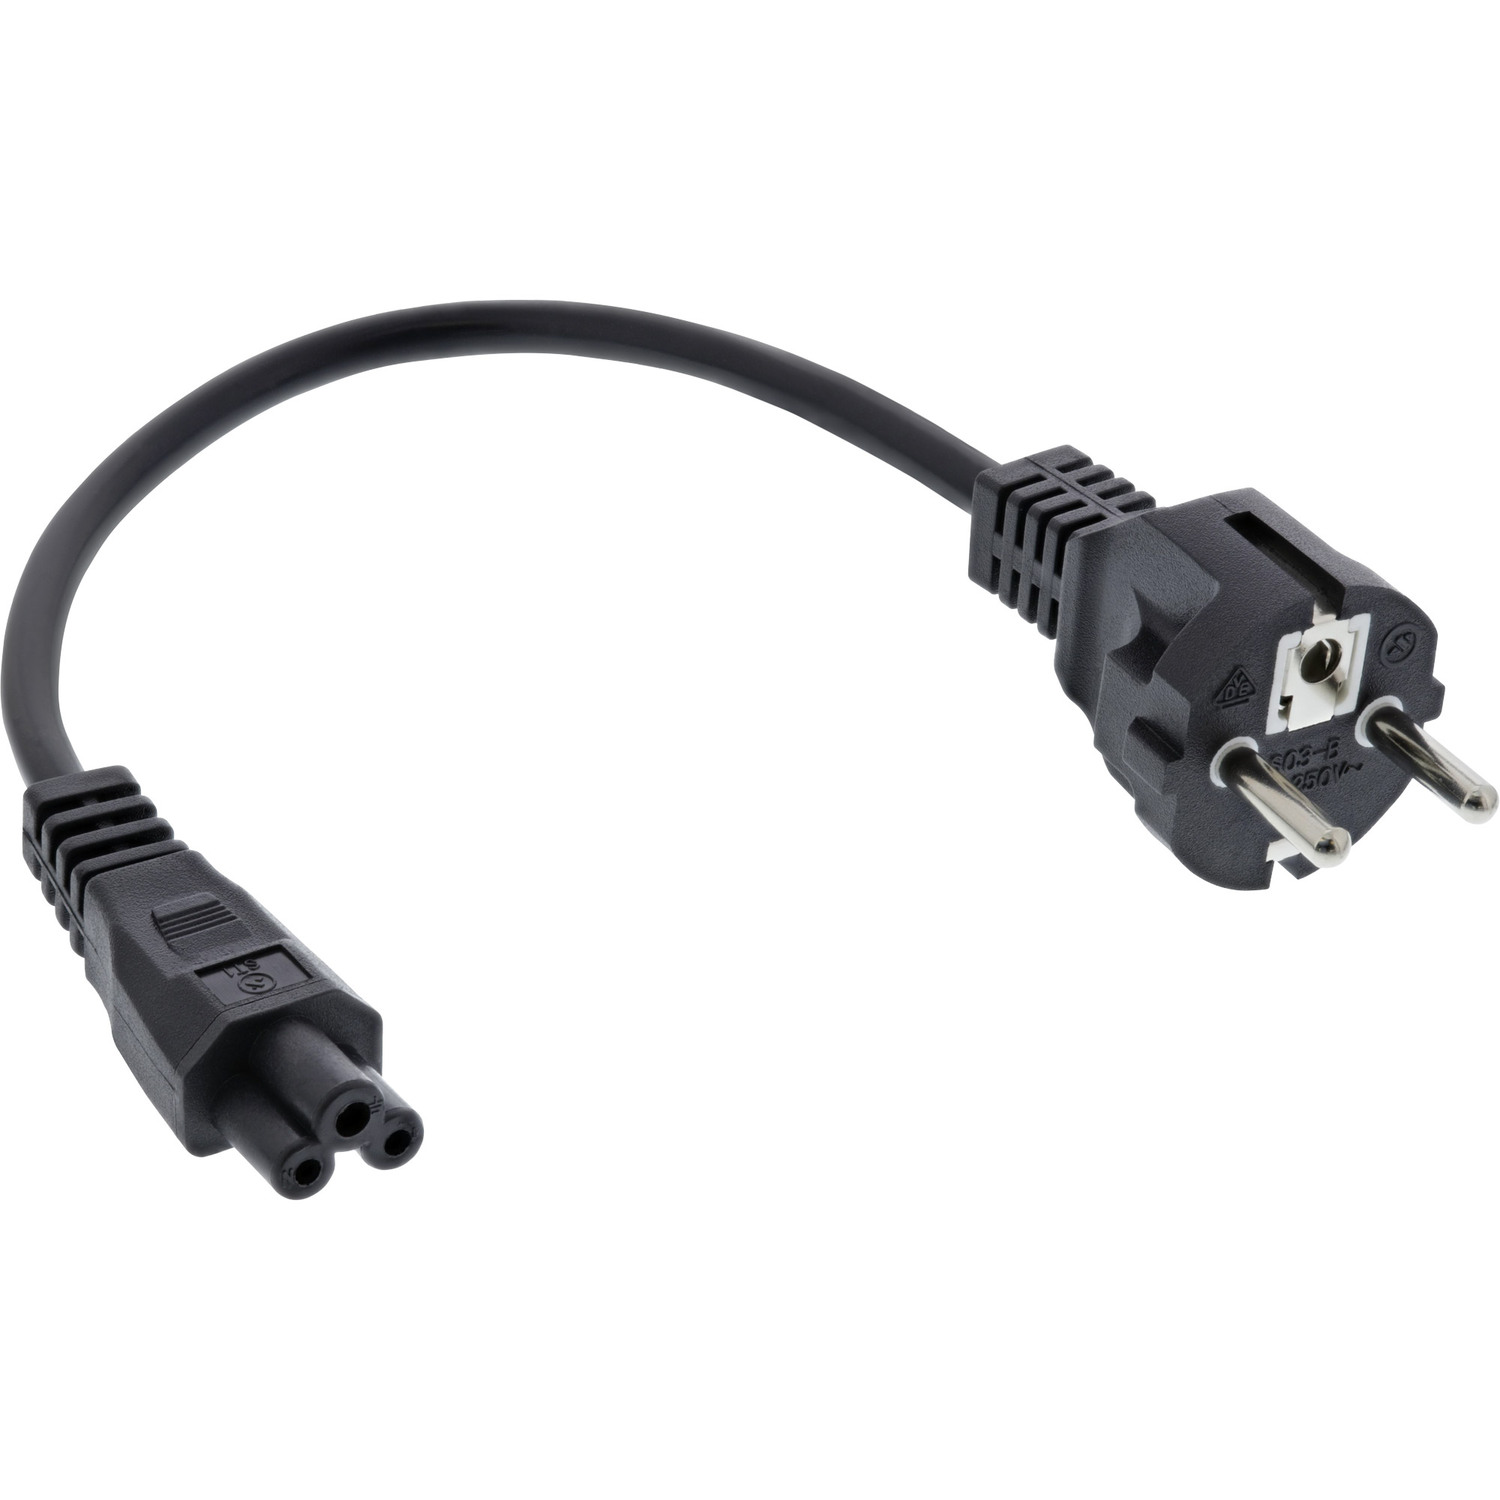 0,3m schwarz, Netzkabel m, InLine® Stromkabel für extern, 3pol Kabel, INLINE 0,3 schwarz Kupplung, Notebook,